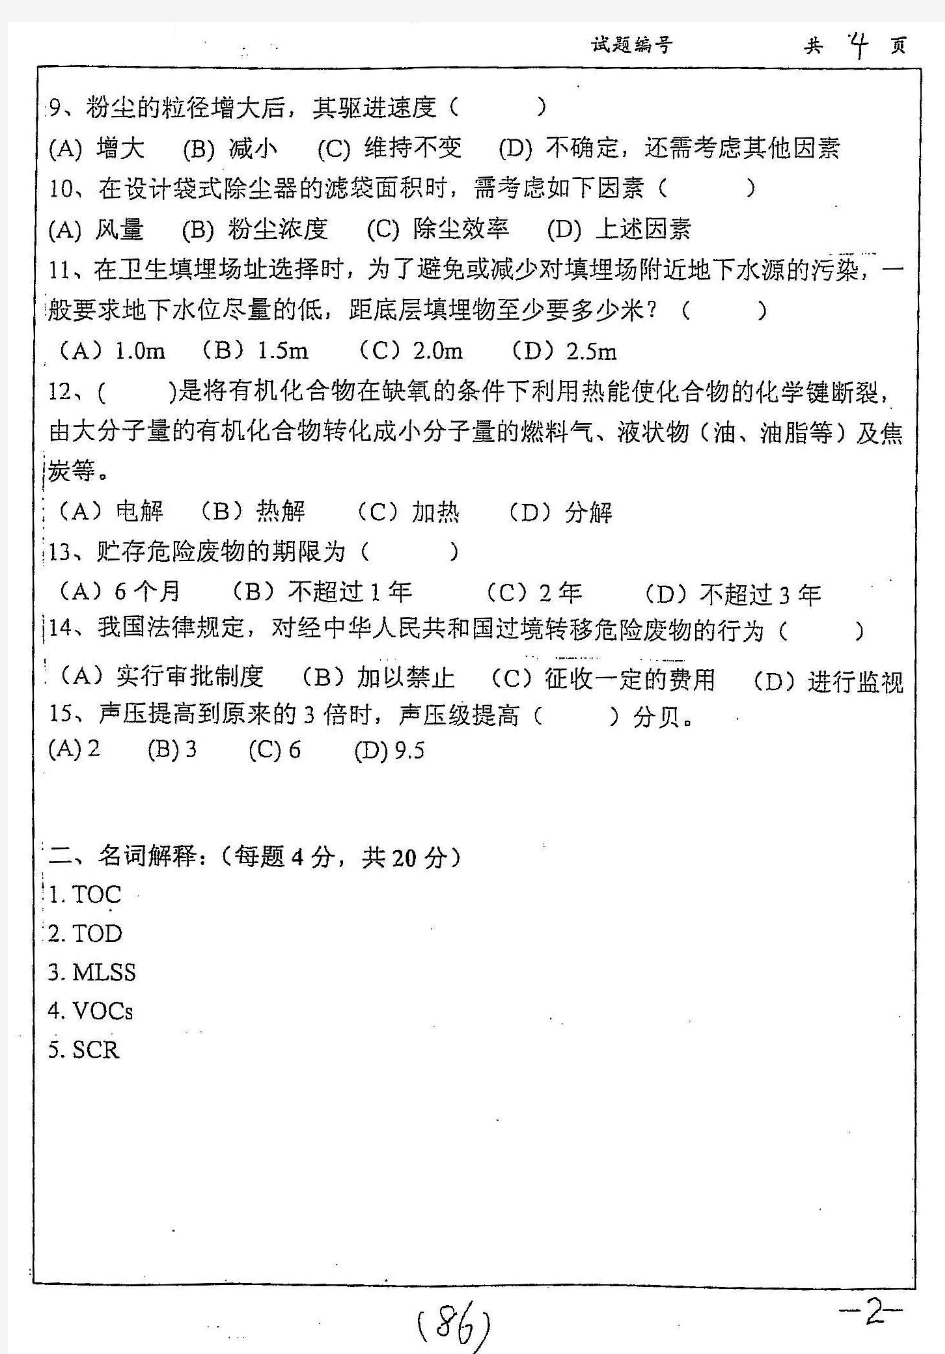 2008年南京大学环境工程学考研真题-考研真题资料